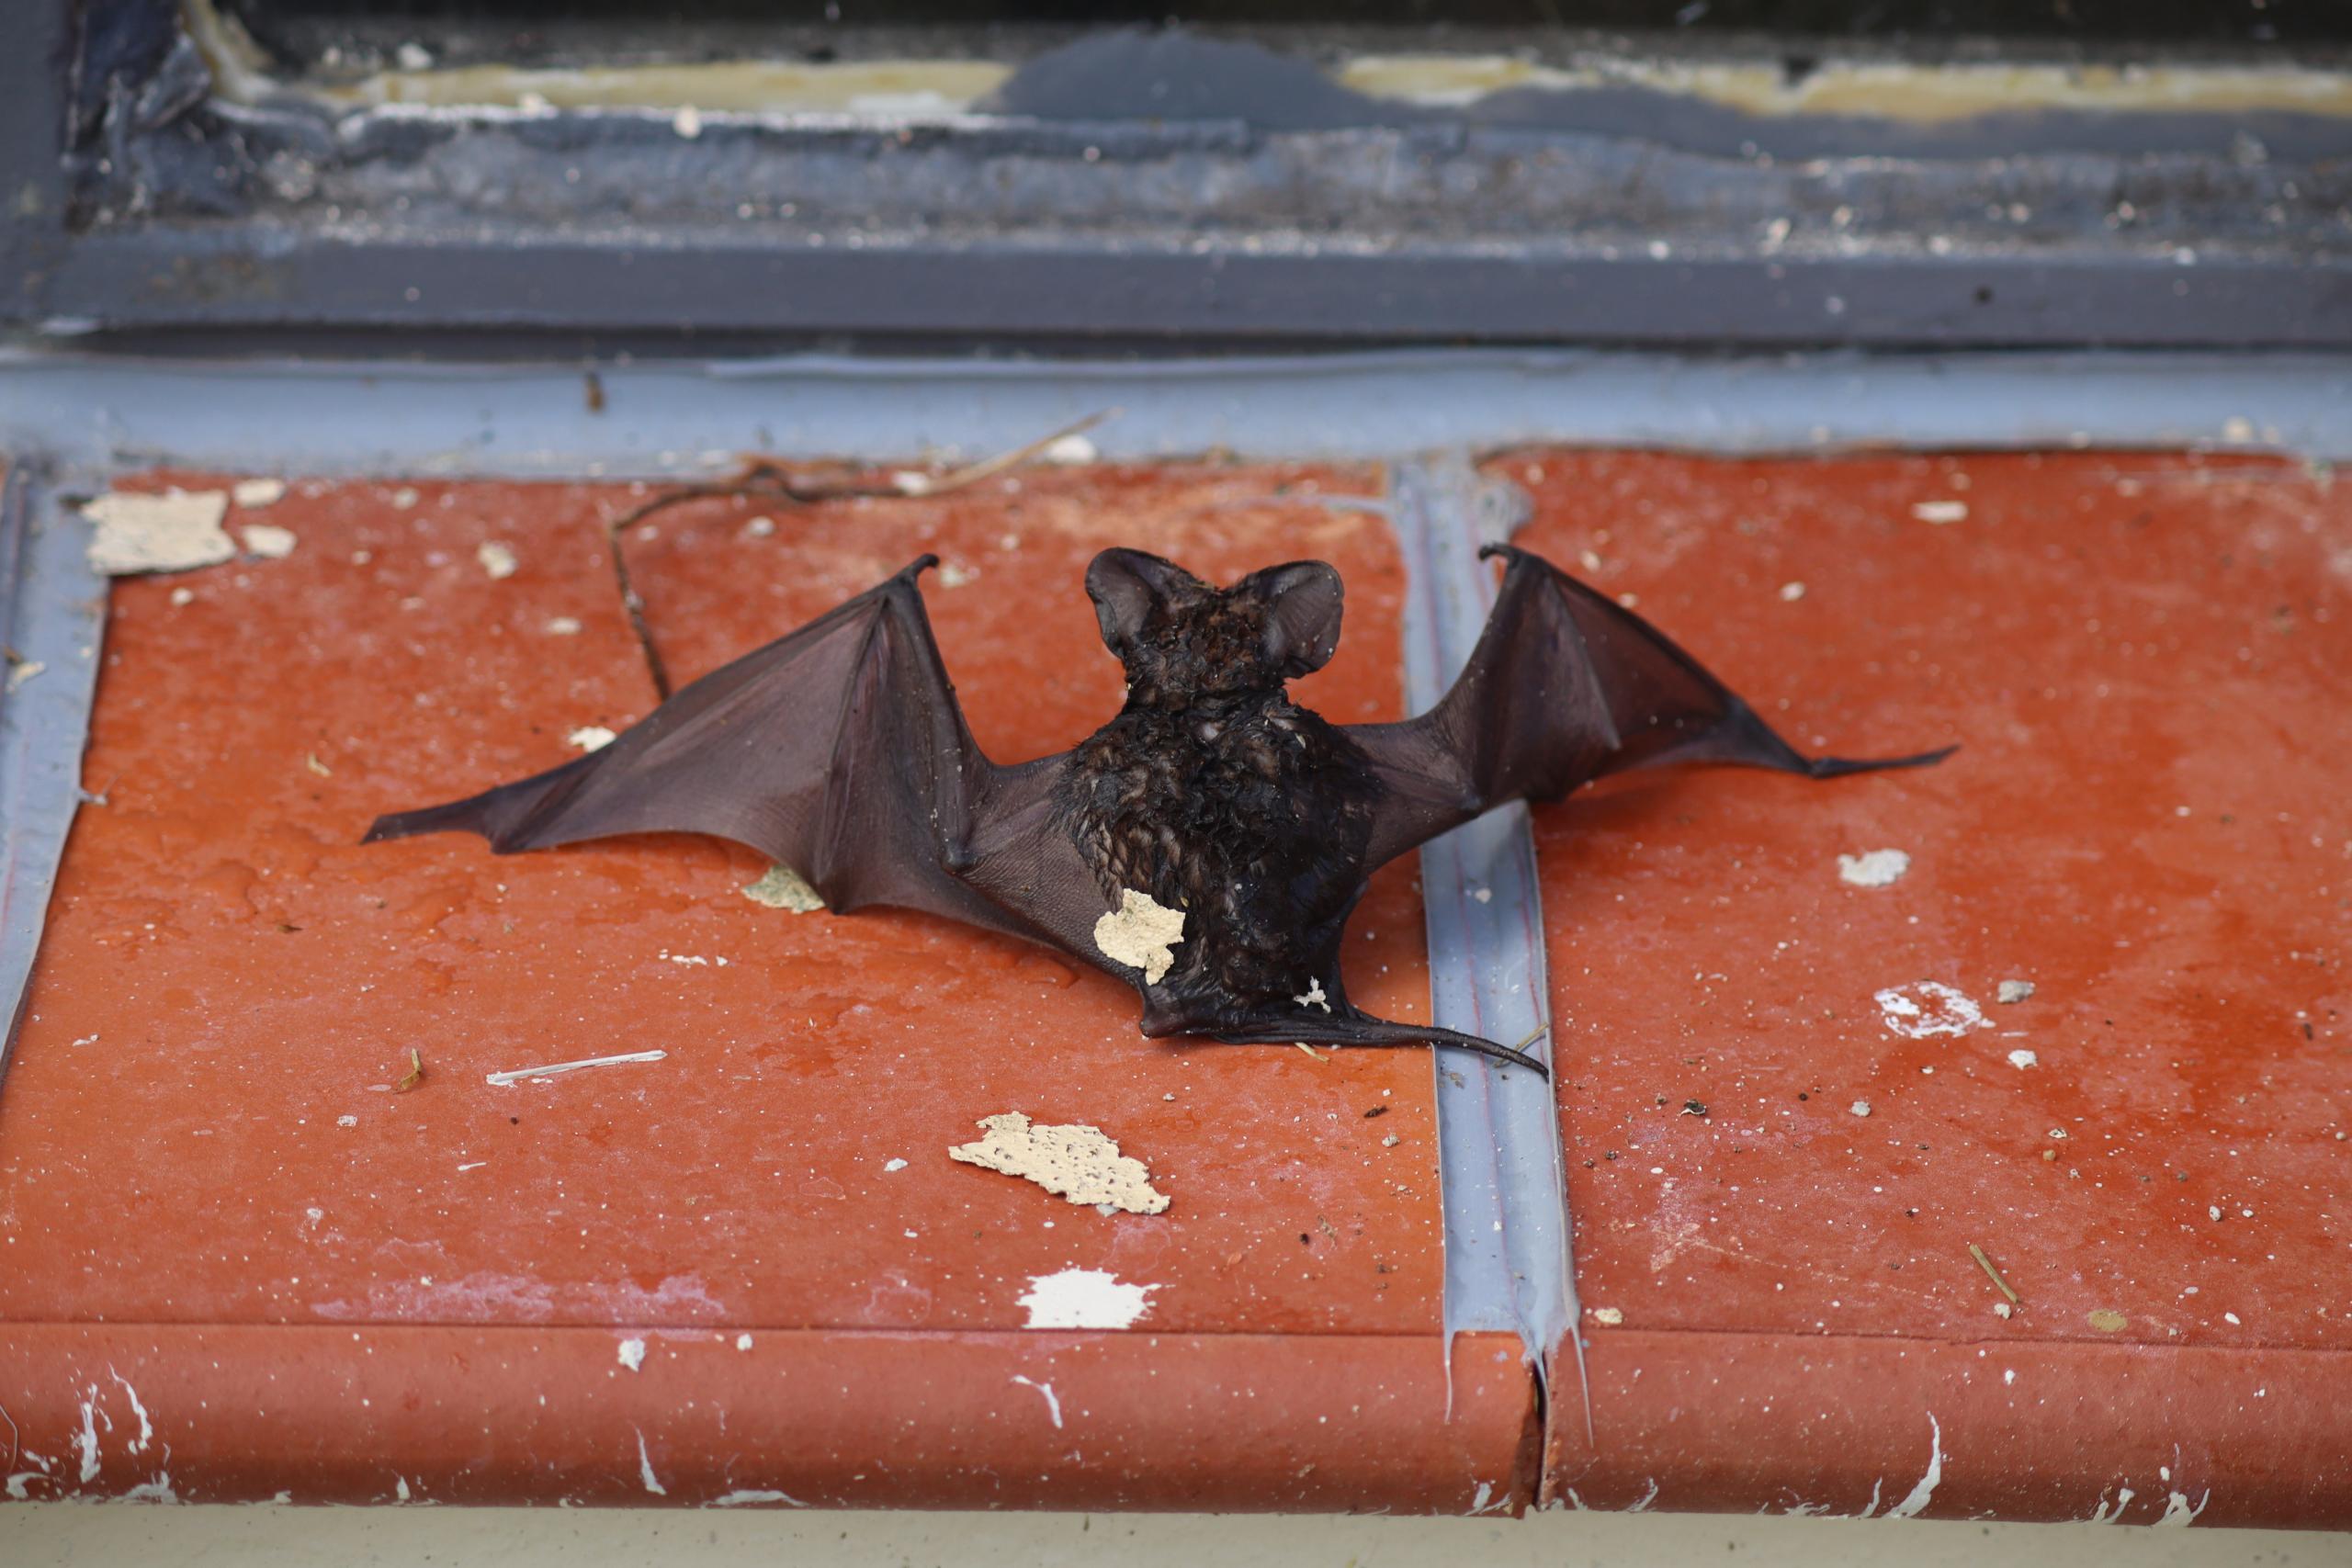 Fotografia horizontal e colorida de um morcego morto em cima de lajotas marrom avermelhadas, separadas por rejuntes na cor cinza. O morcego é preto e está com as asas abertas e rígidas. Algumas partes do corpo do morcego estão desfiguradas. Na lajota, há algumas manchas de tinta branca e pedaços de tinta creme secos. Ao fundo, a base de metal da janela em cor cinza.